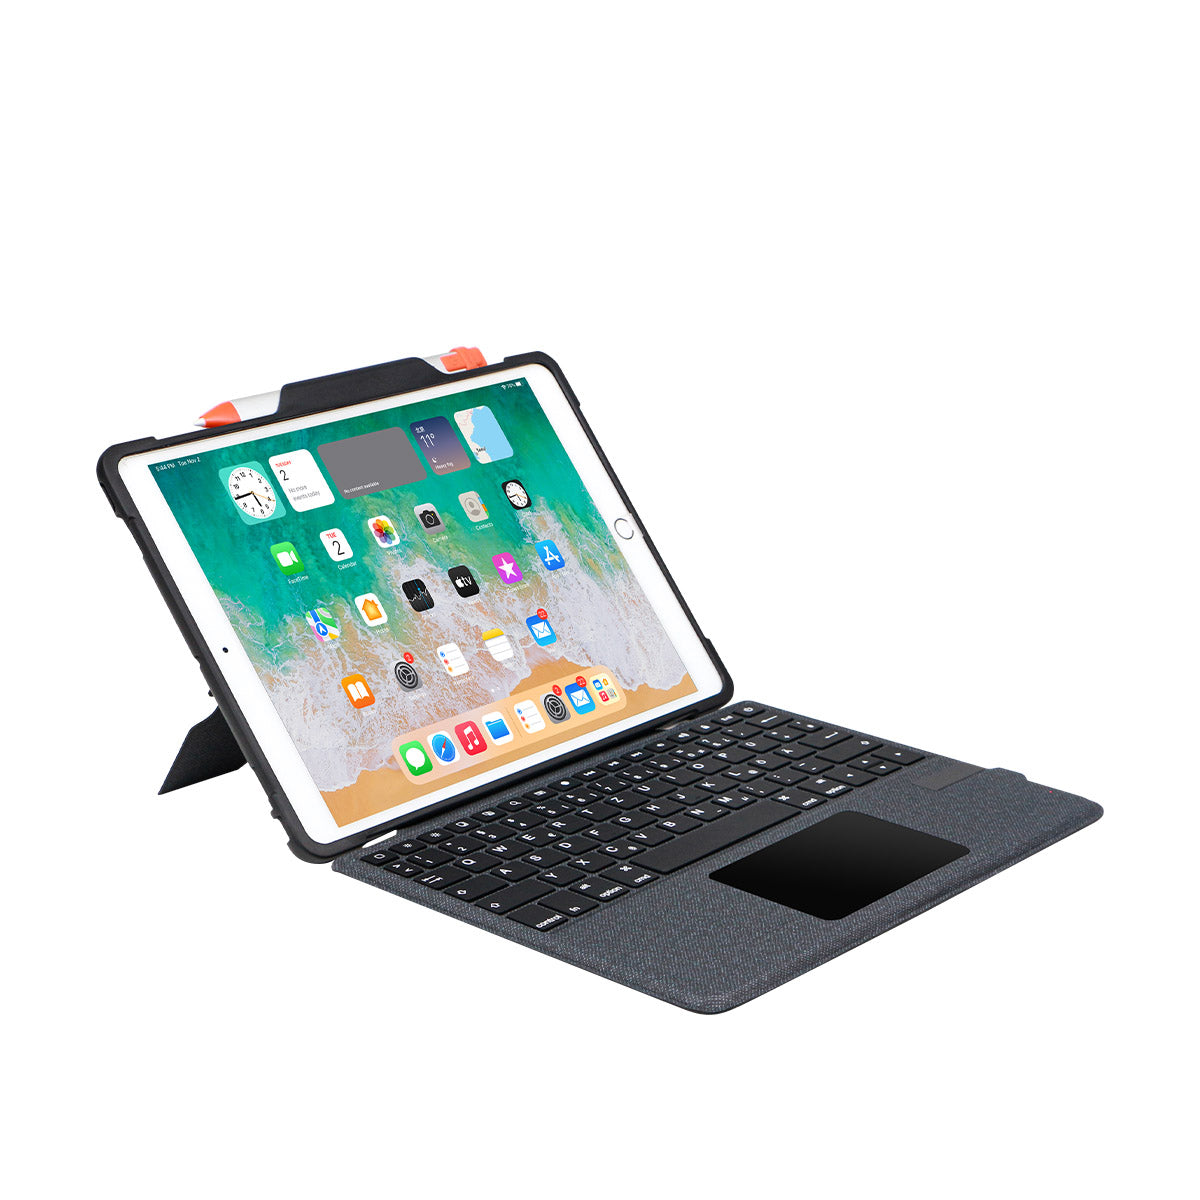 新しいデザインの Bluetooth キーボード フォリオ iPad 用タッチパッド &amp; ユニバーサル ペン スロット iPad キーボード ケース